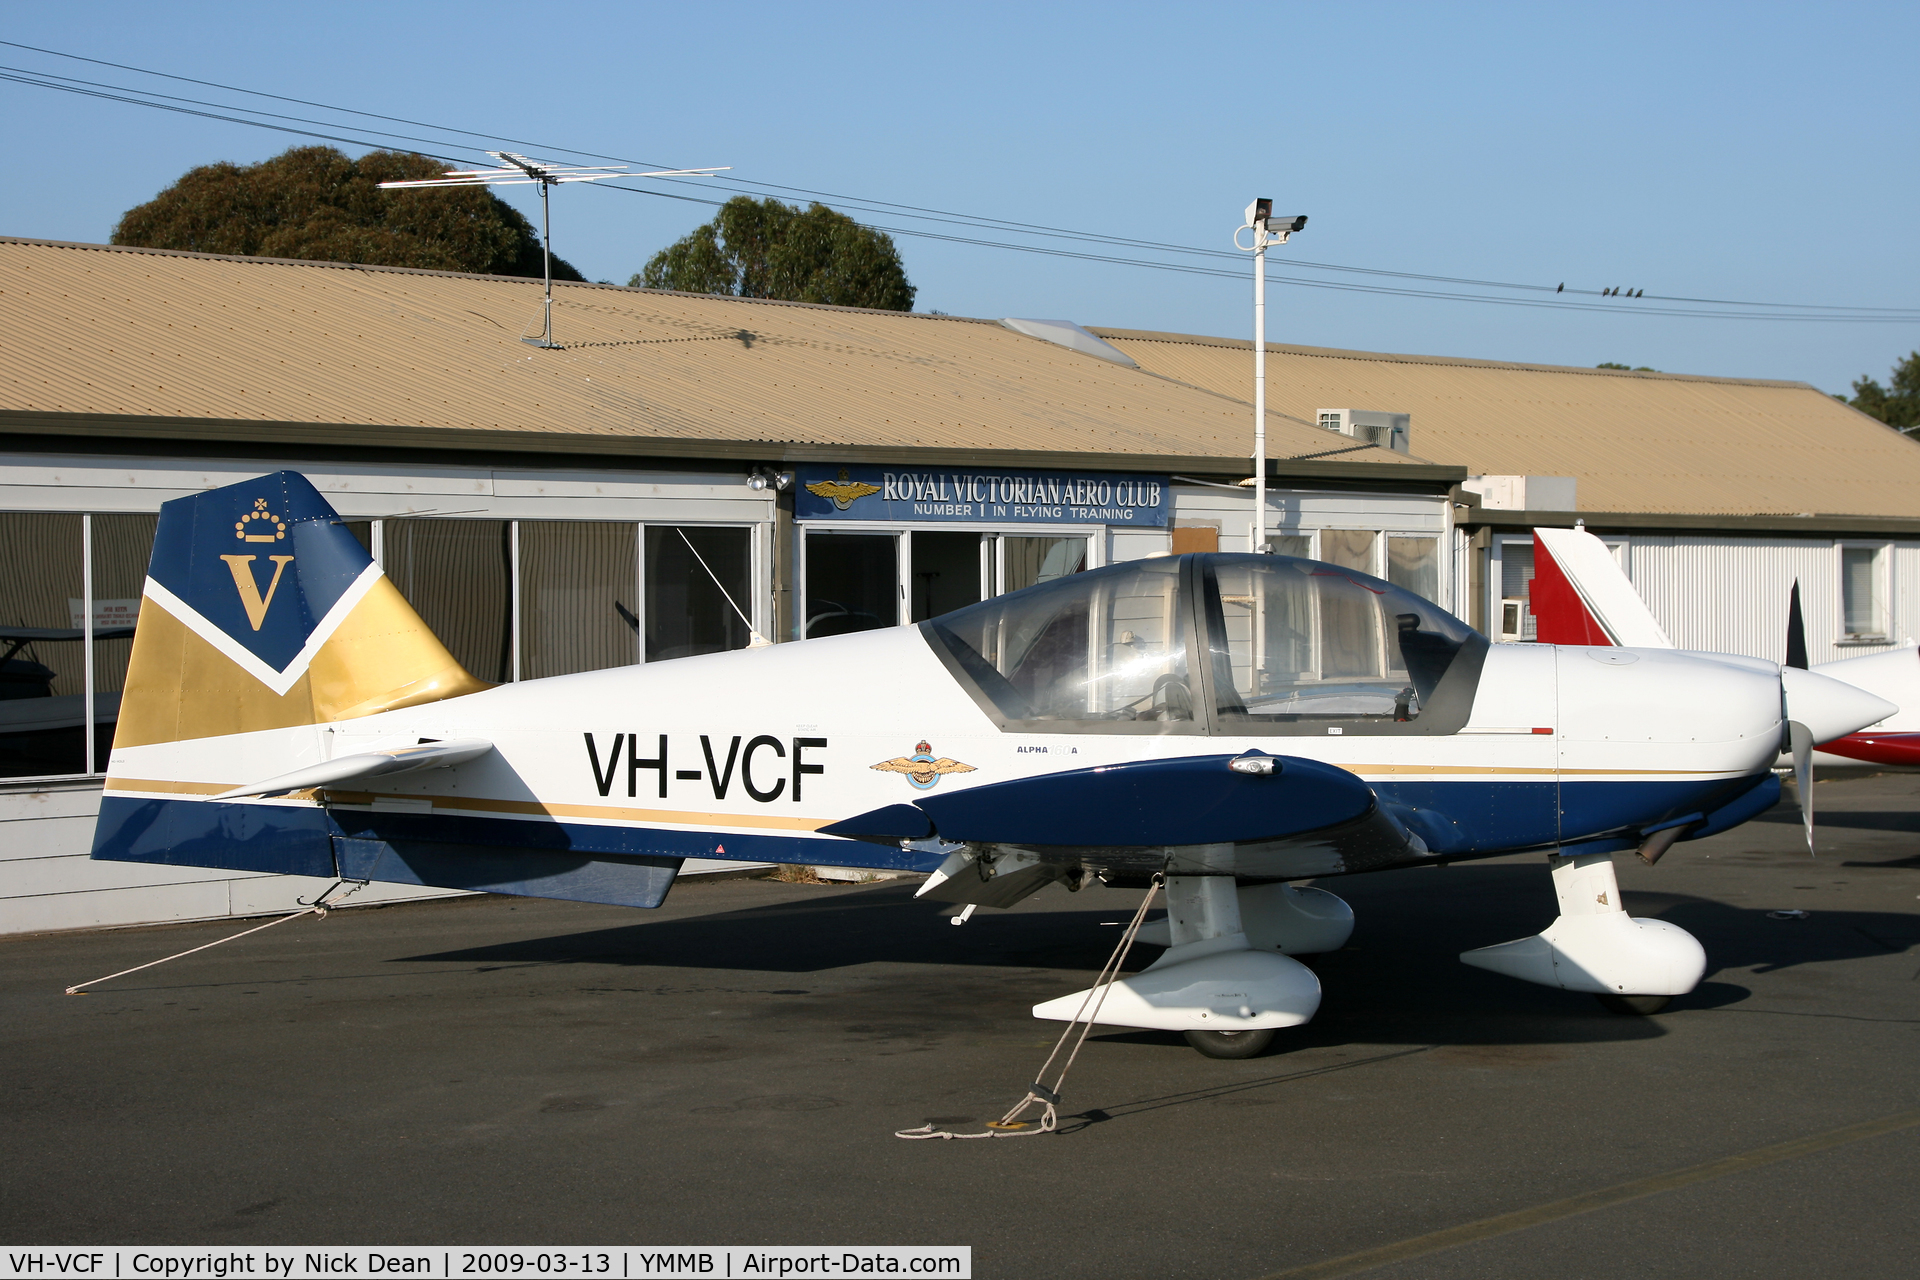 VH-VCF, 2007 Alpha R2160 C/N 160A-0015, YMMB